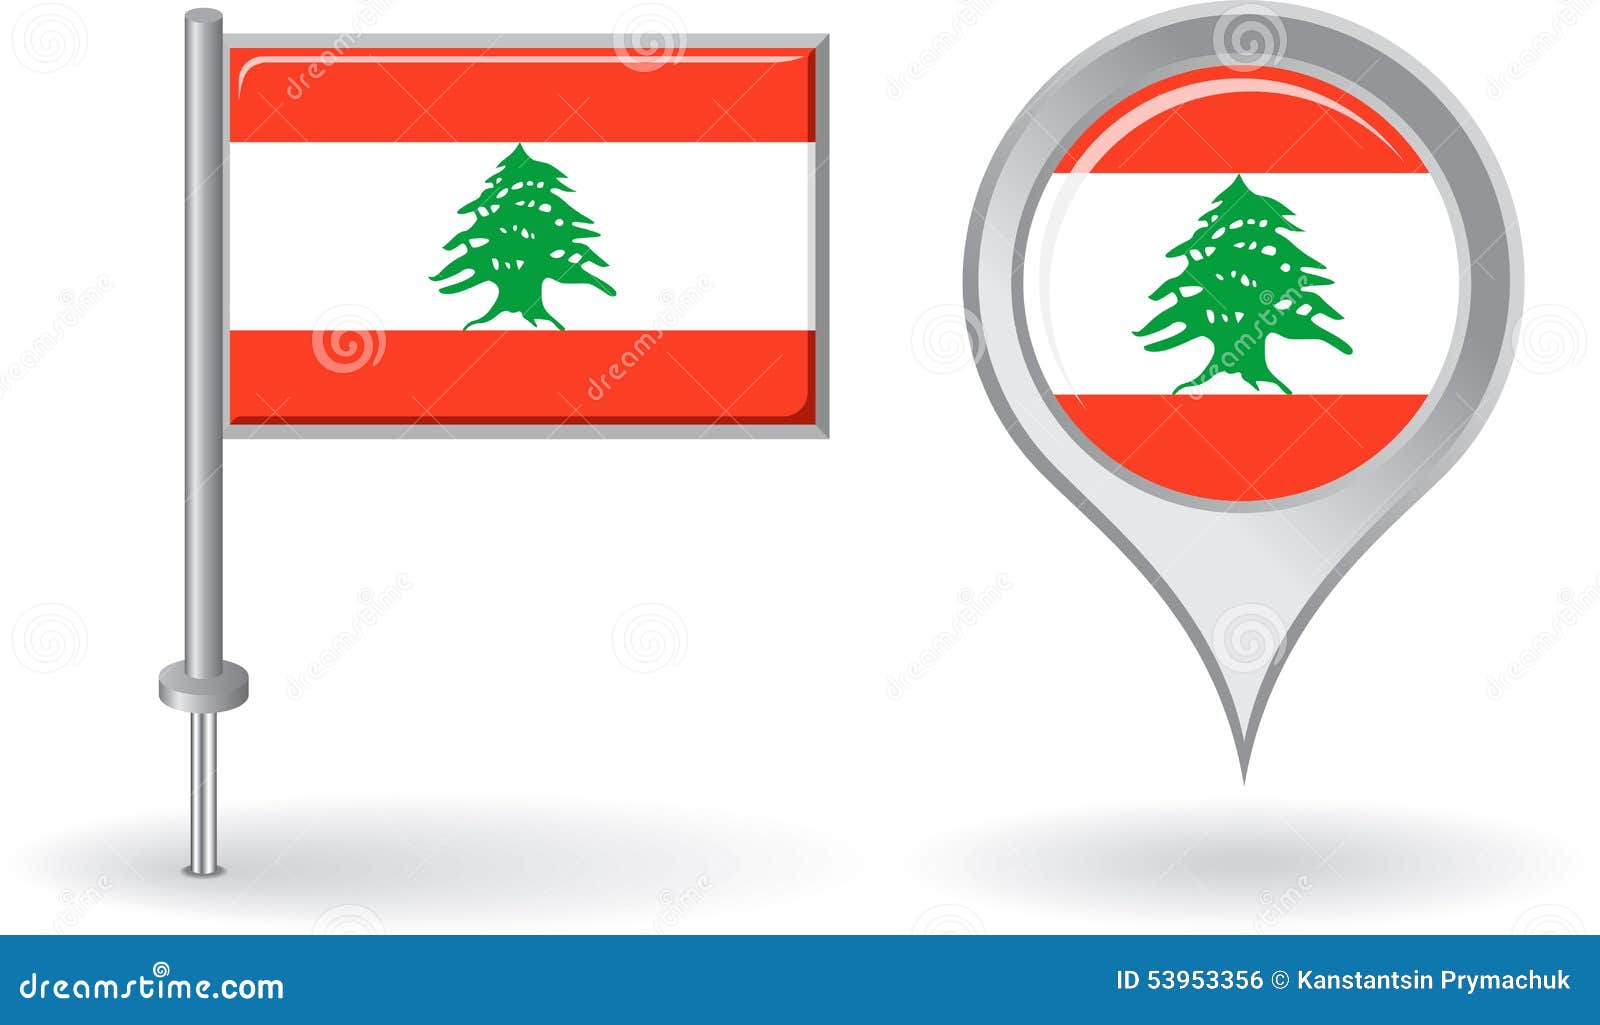 Lebanese flag stock illustrations â lebanese flag stock illustrations vectors clipart